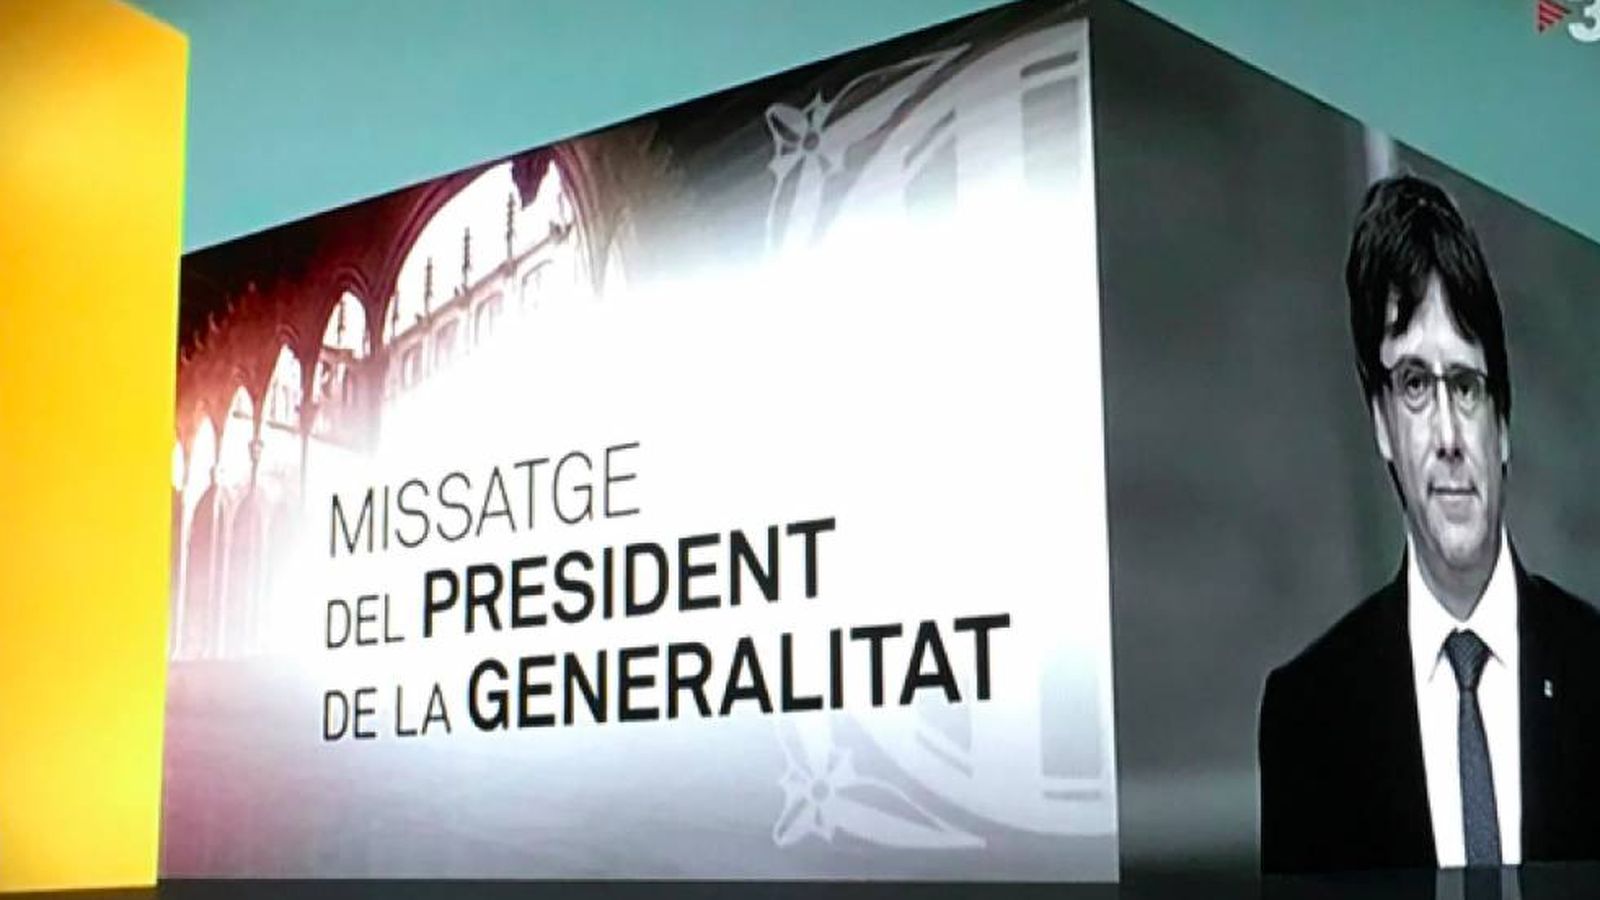 Foto: Imagen de la publicidad de TV3 para los discursos de Puigdemont.